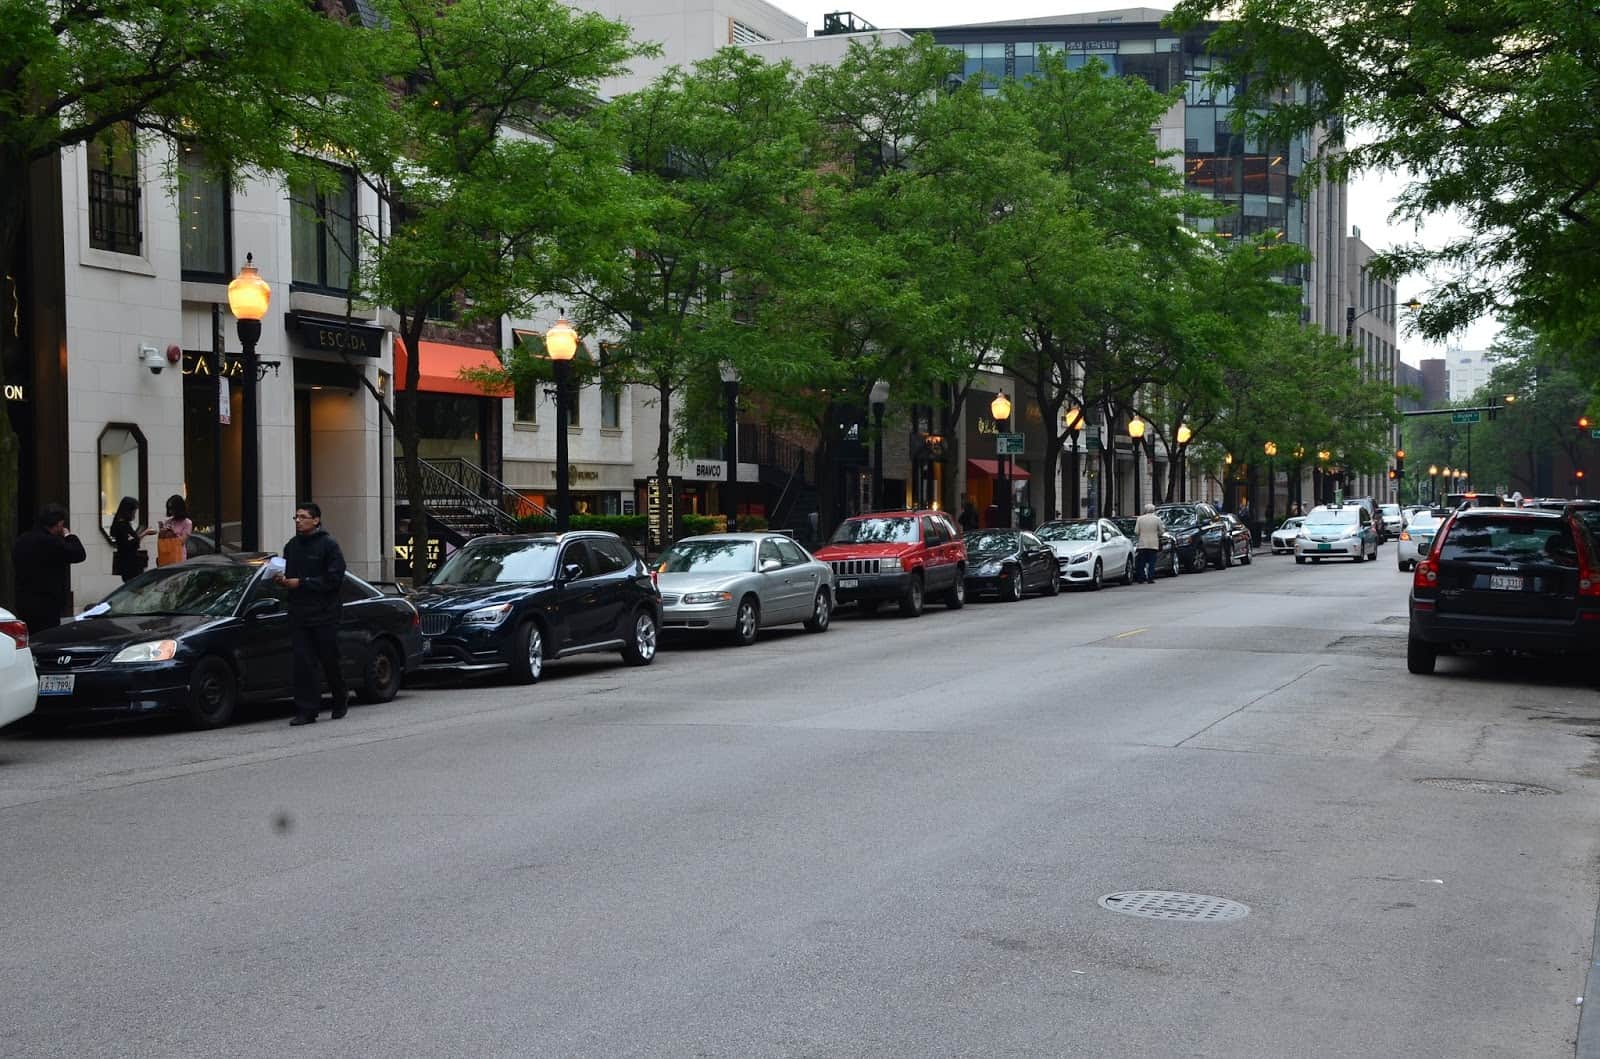 Oak Street in Chicago, Illinois